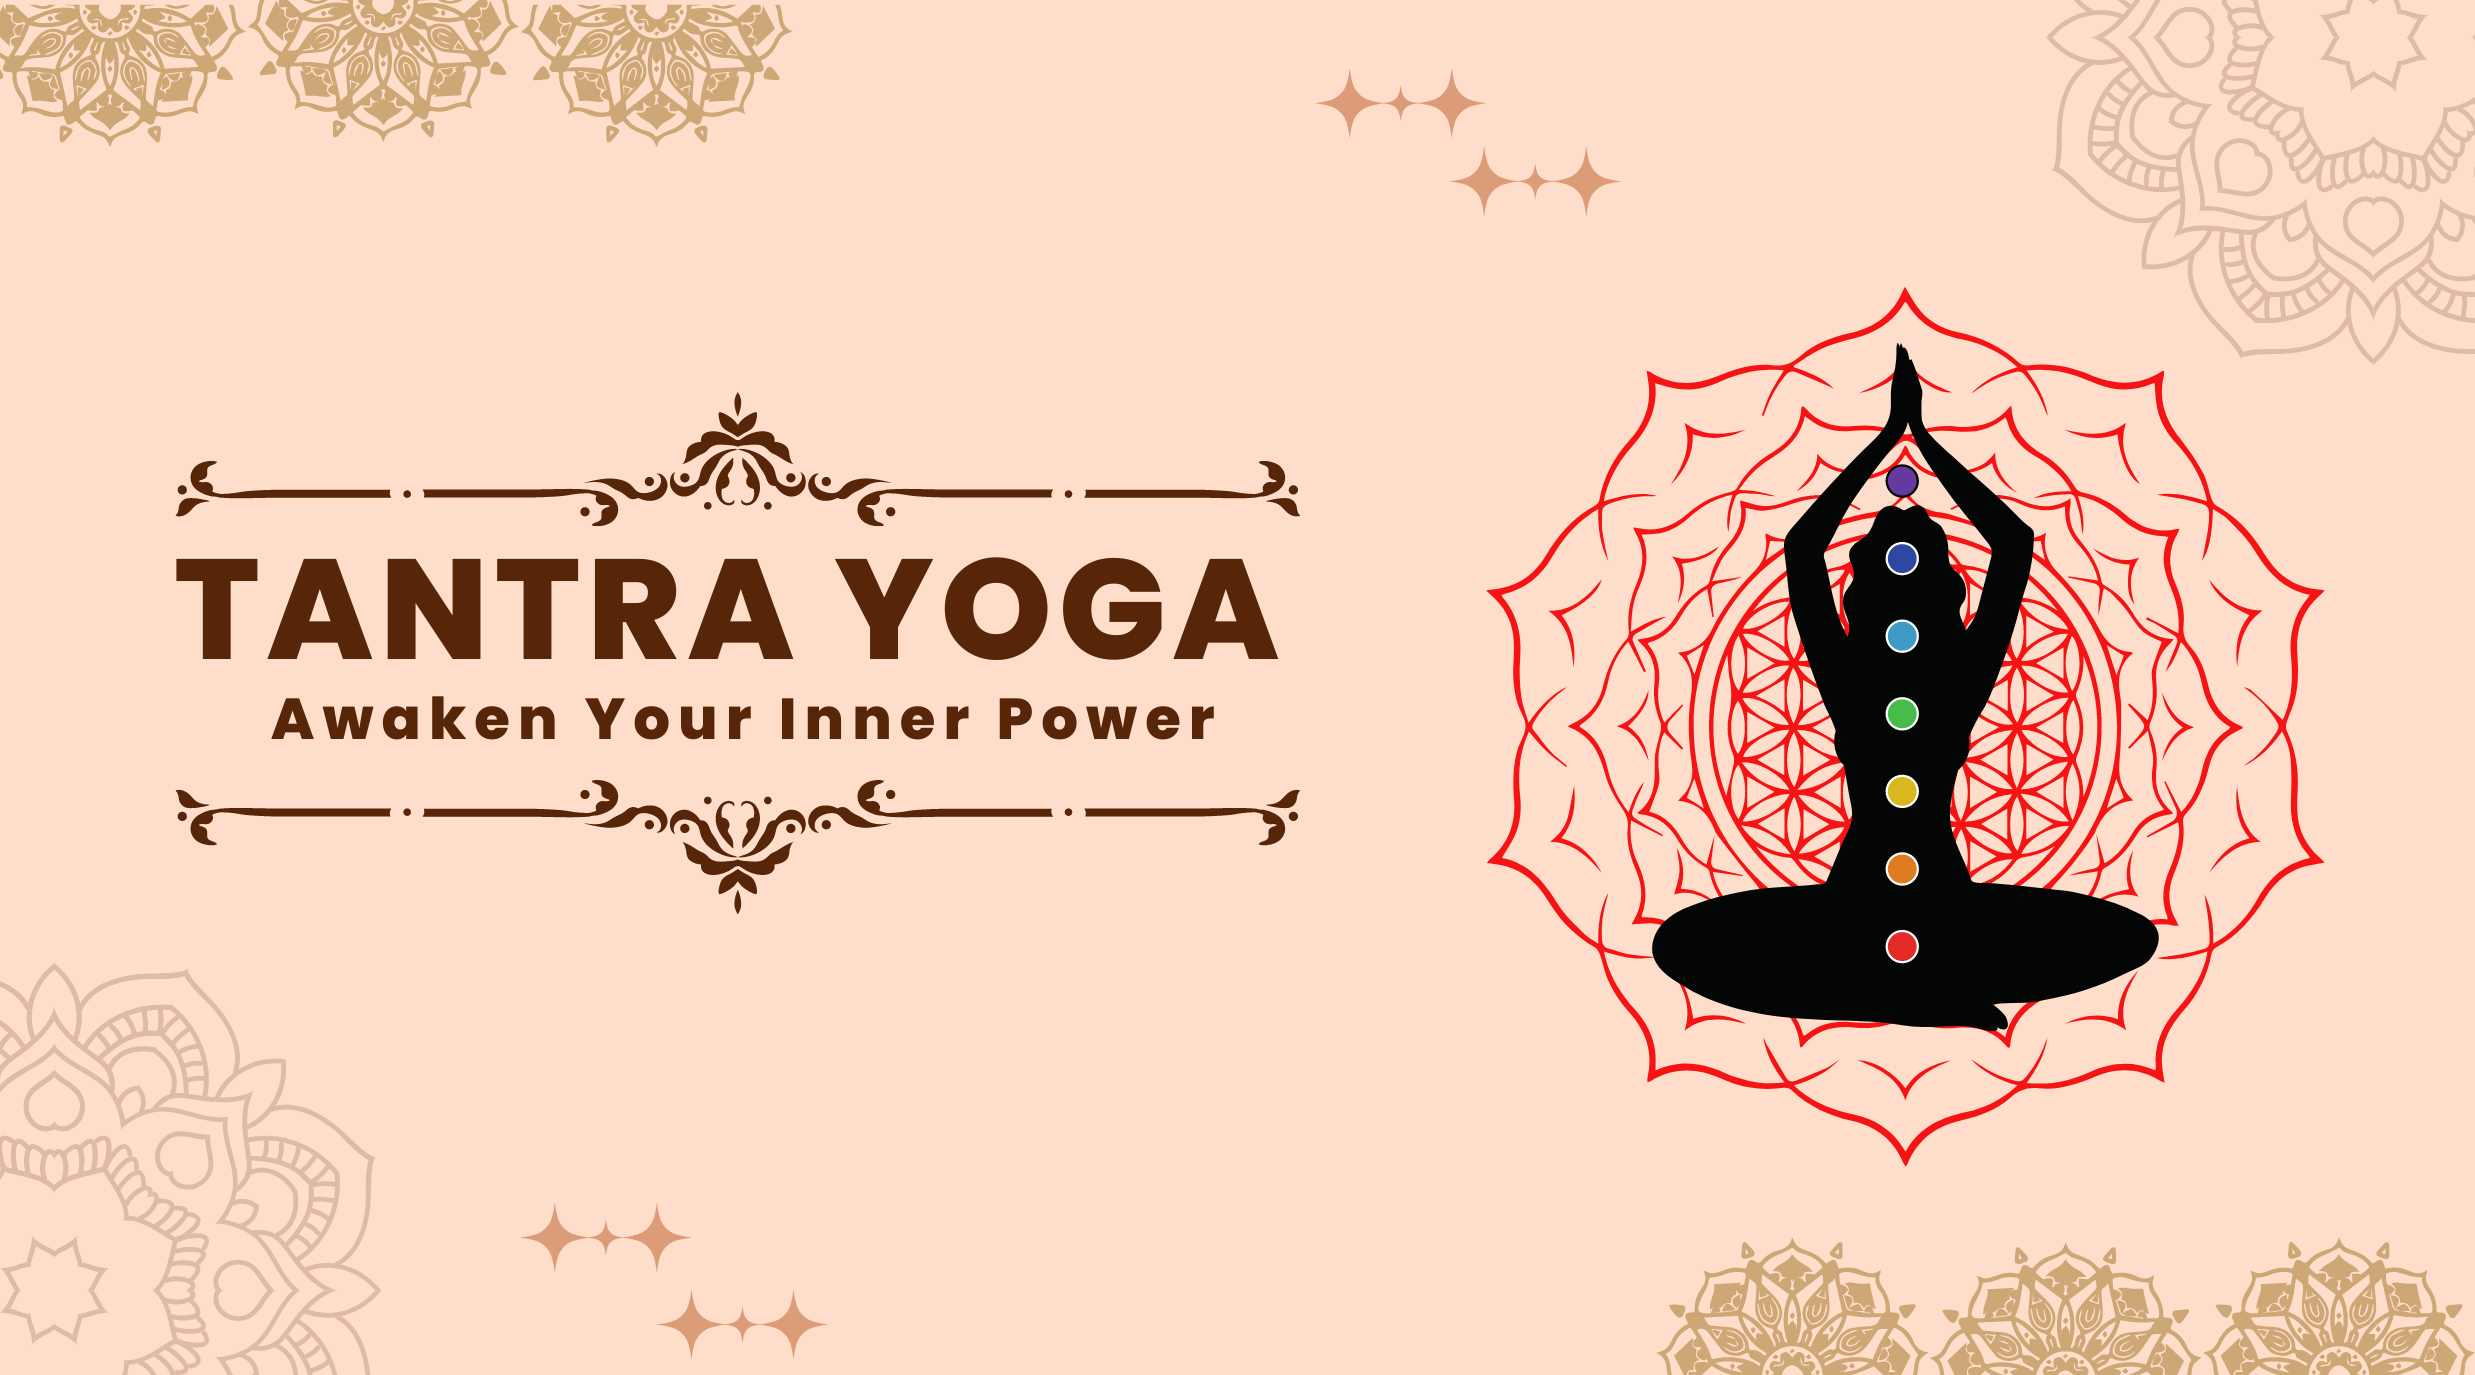 Tantra Yoga: Awaken Your Inner Power